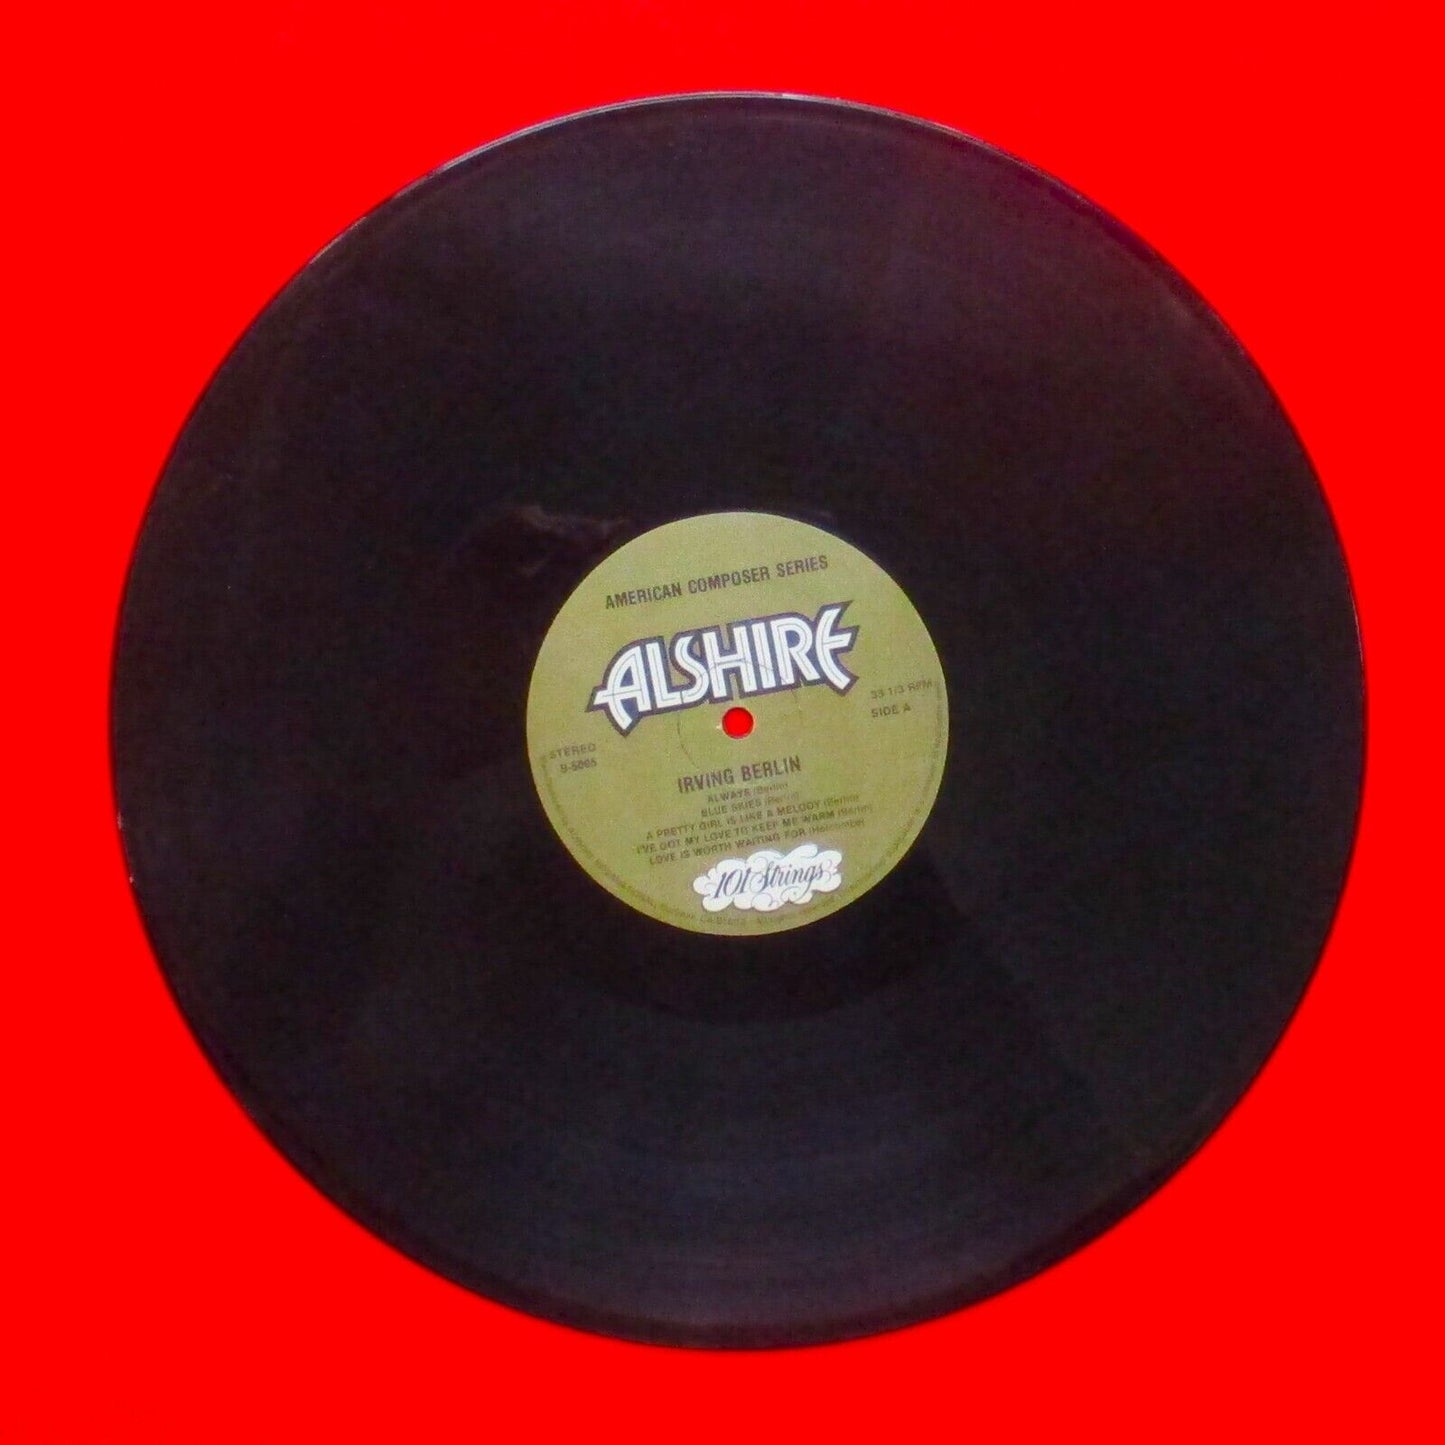 101 Strings ‎The Best Loved Songs Of Irving Berlin Vinyl Album LP 1980 US